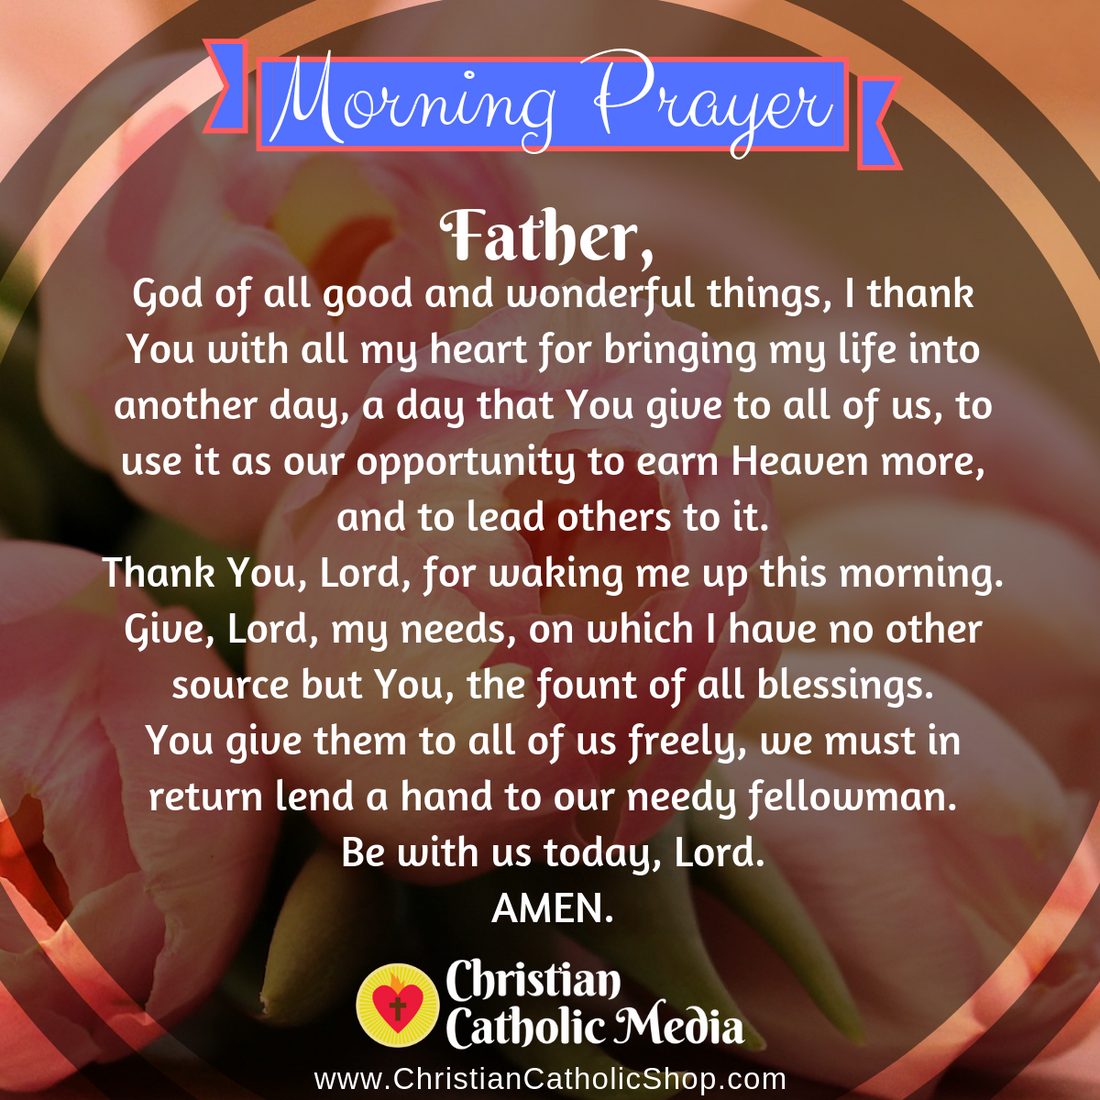 Catholic Morning Prayer Wednesday February 23, 2022